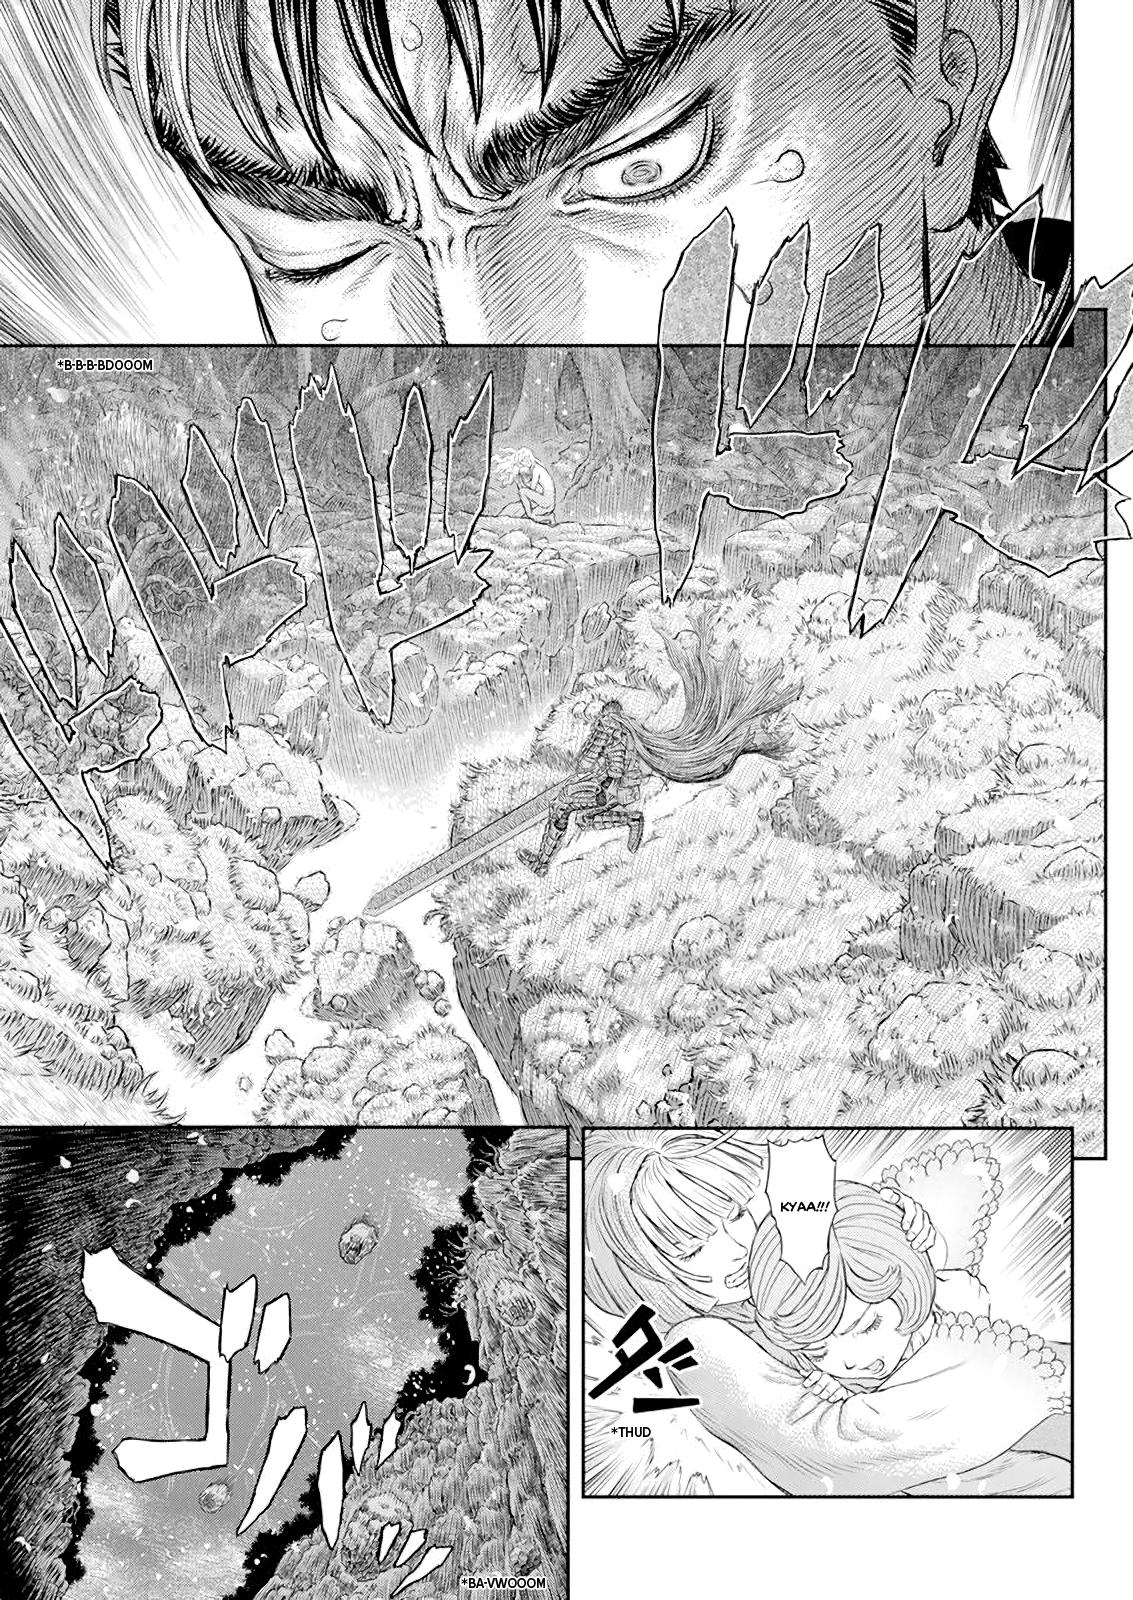 Berserk Manga Chapter 367 image 13